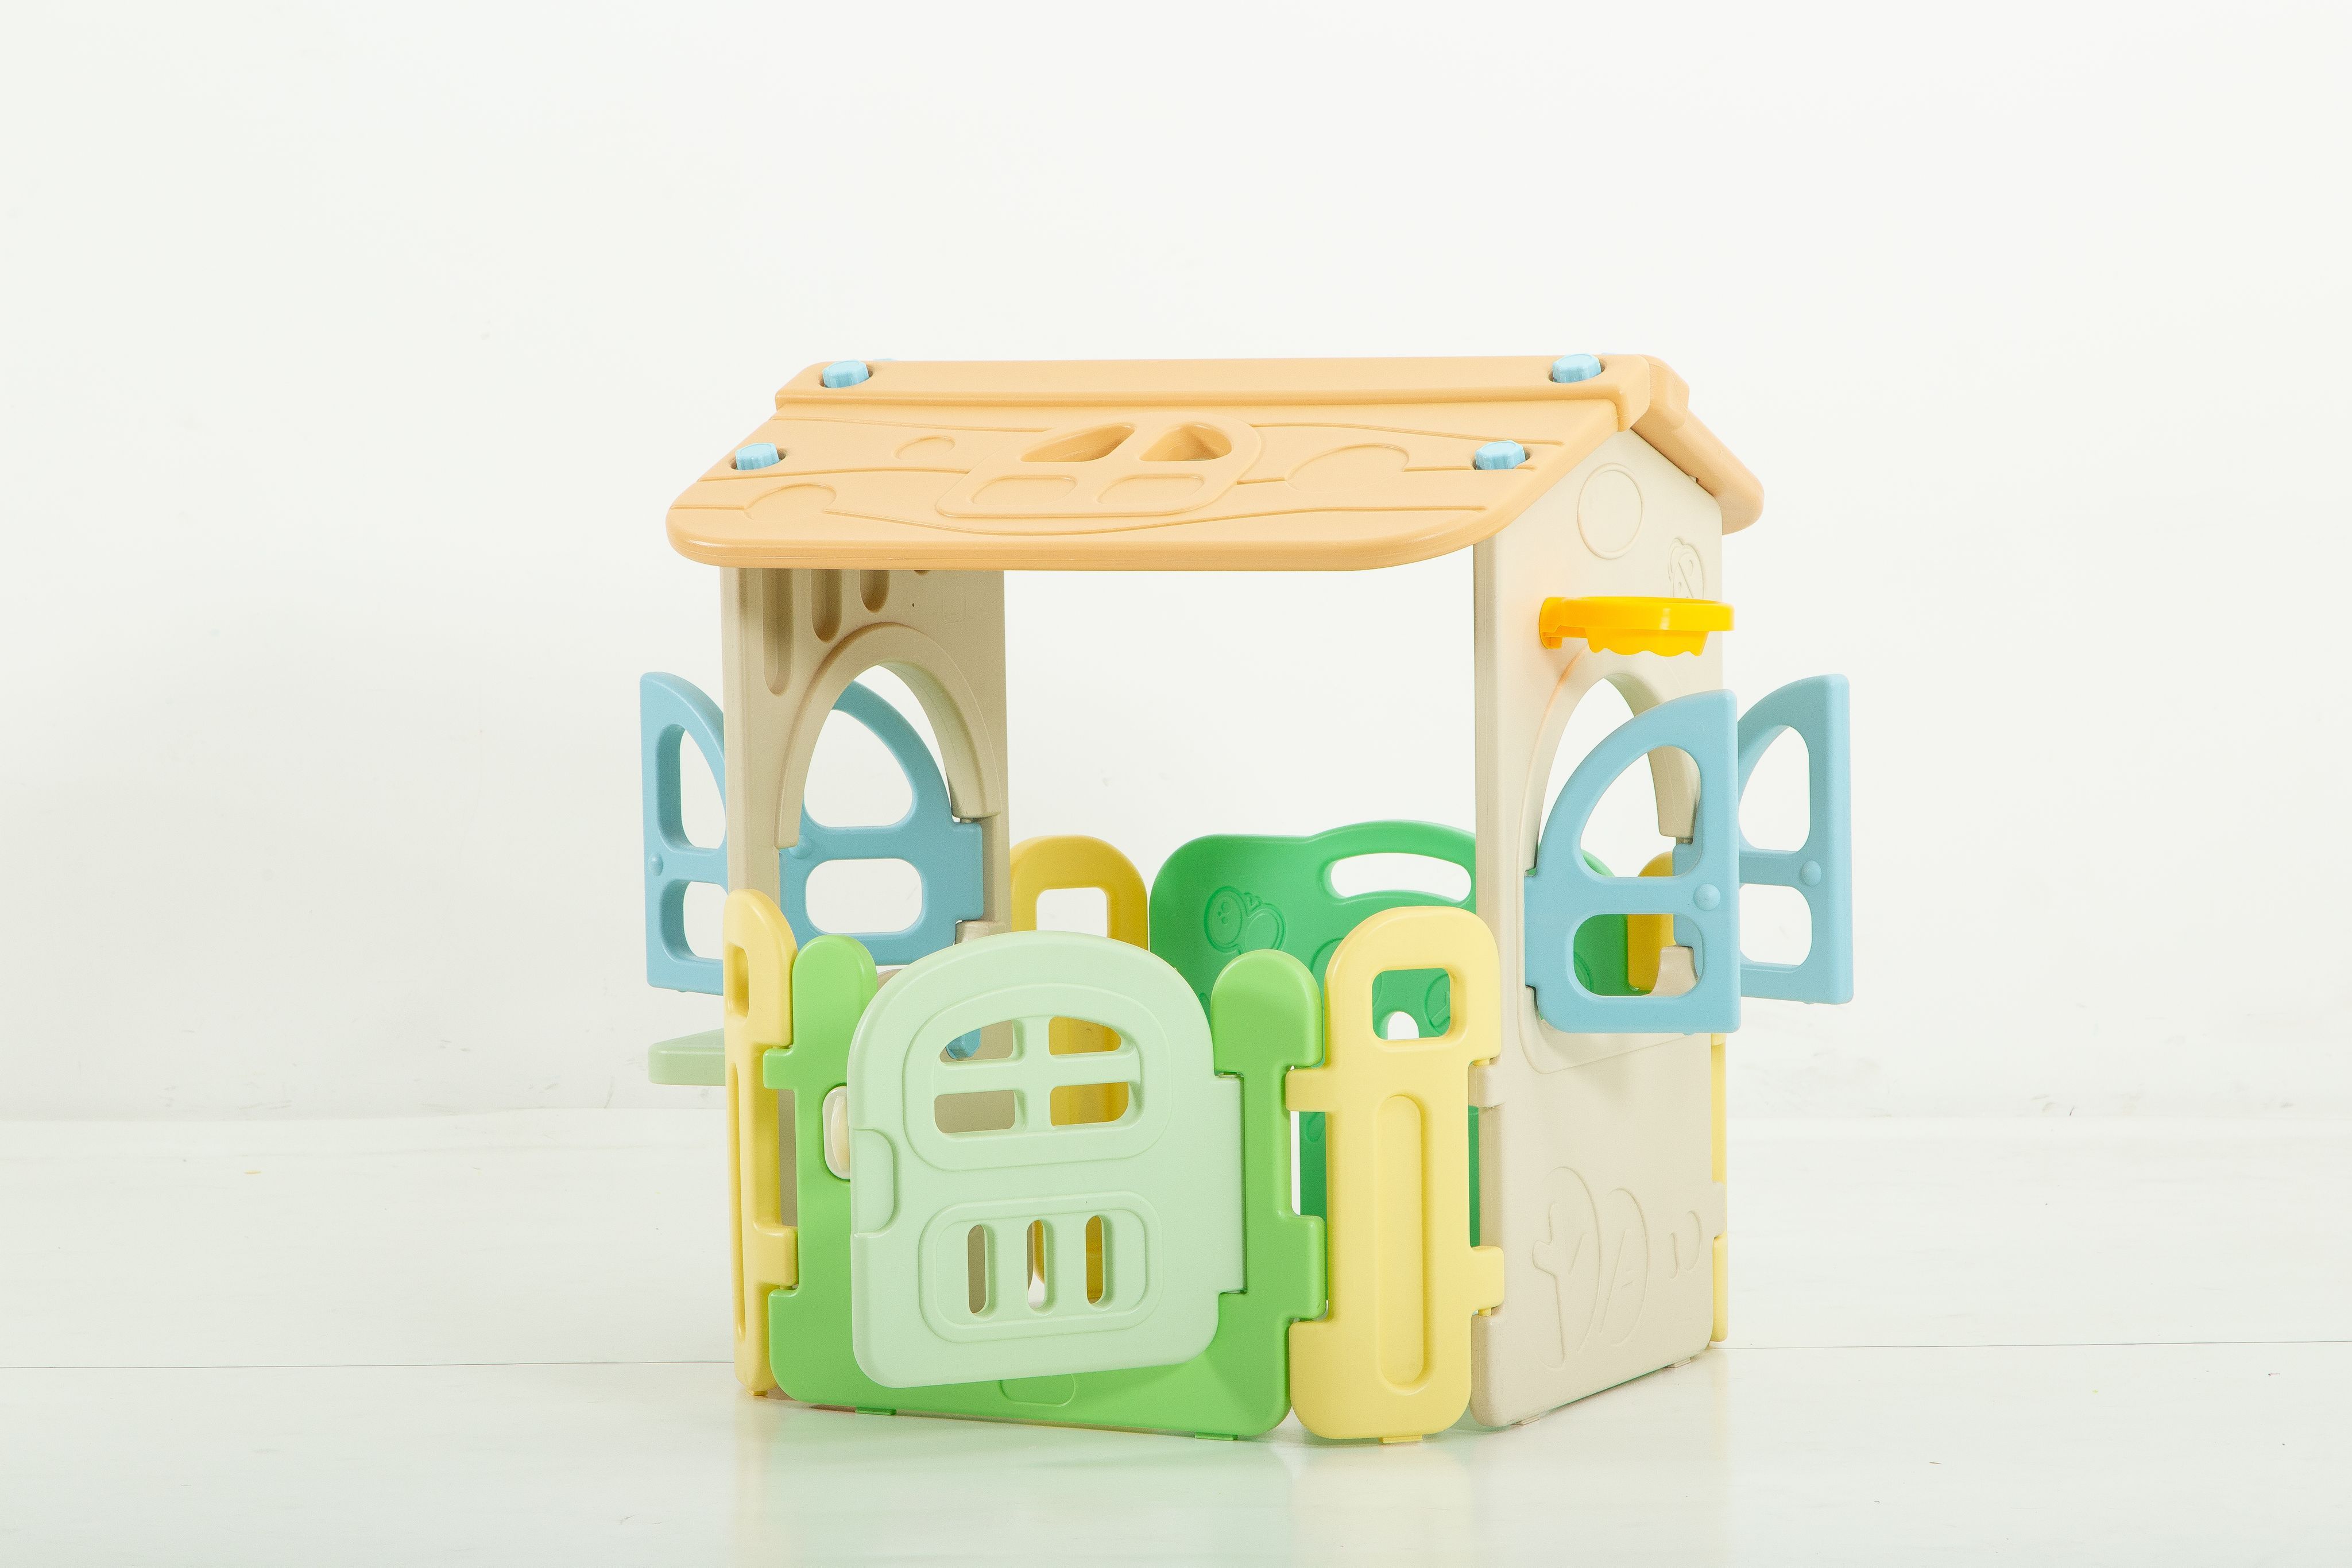 Манеж домик игровой детский UNIX Kids Village 2 в 1 складной, пластиковый, для дома, улицы